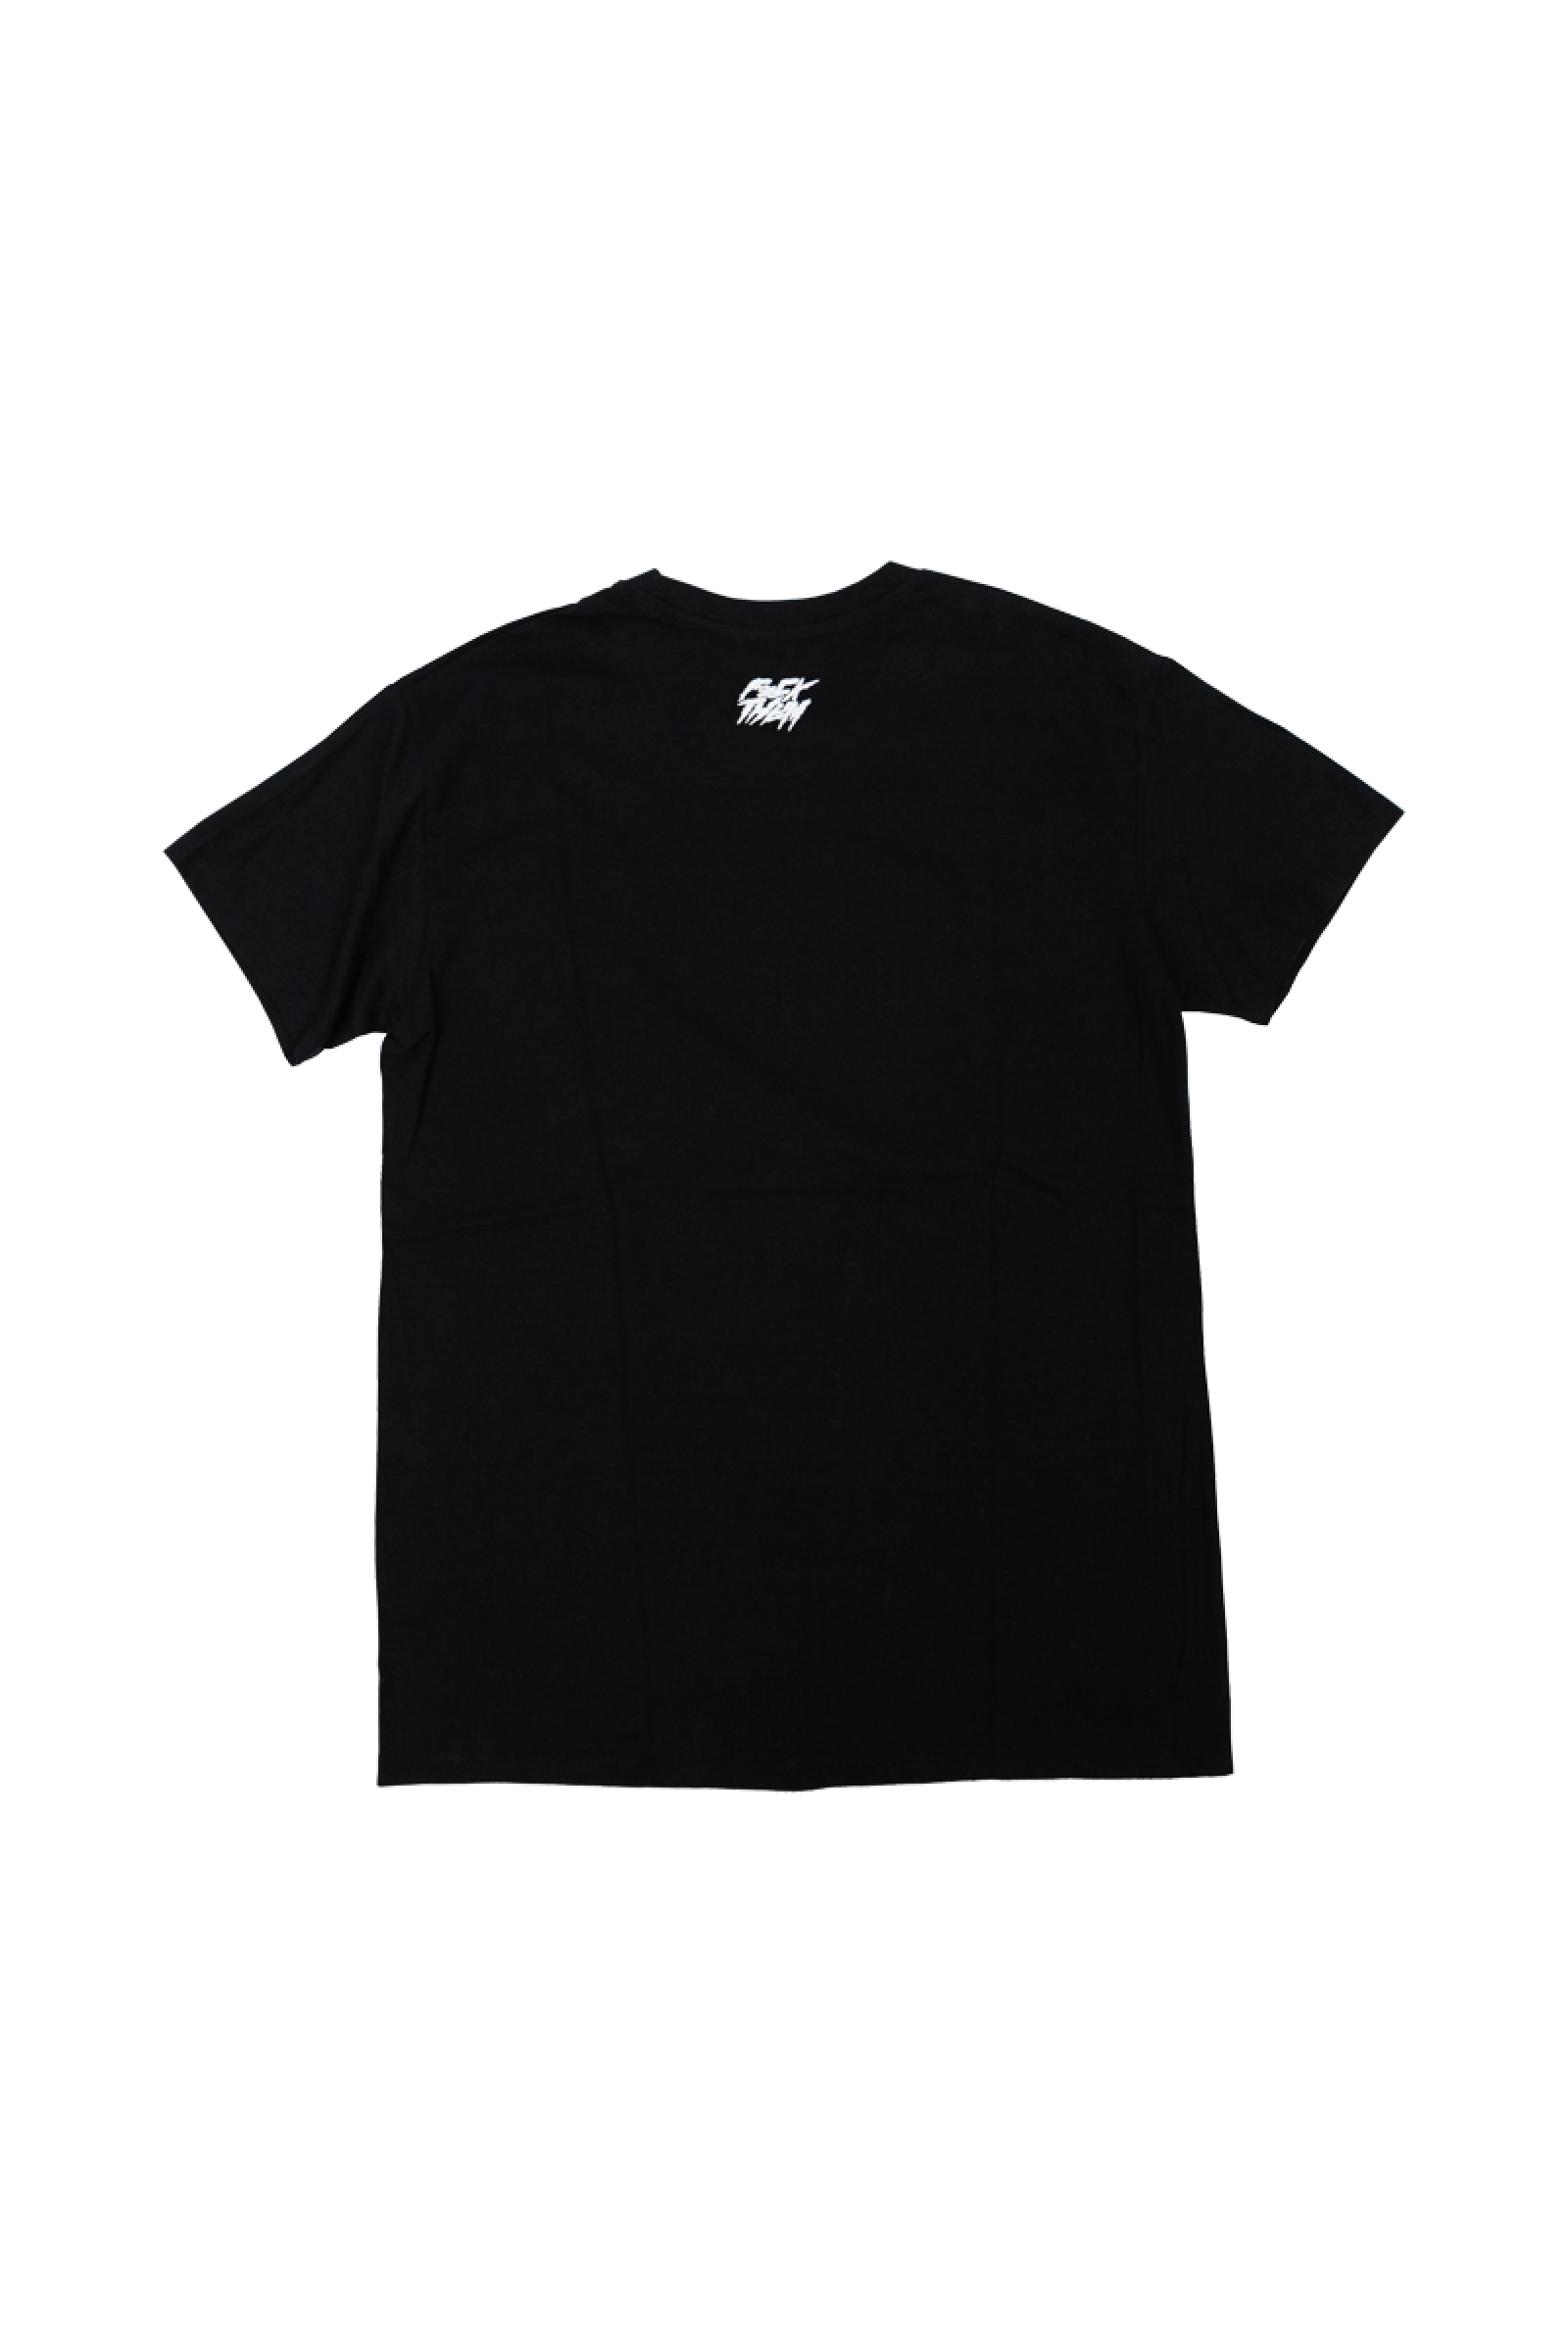 Basic black t-shirt